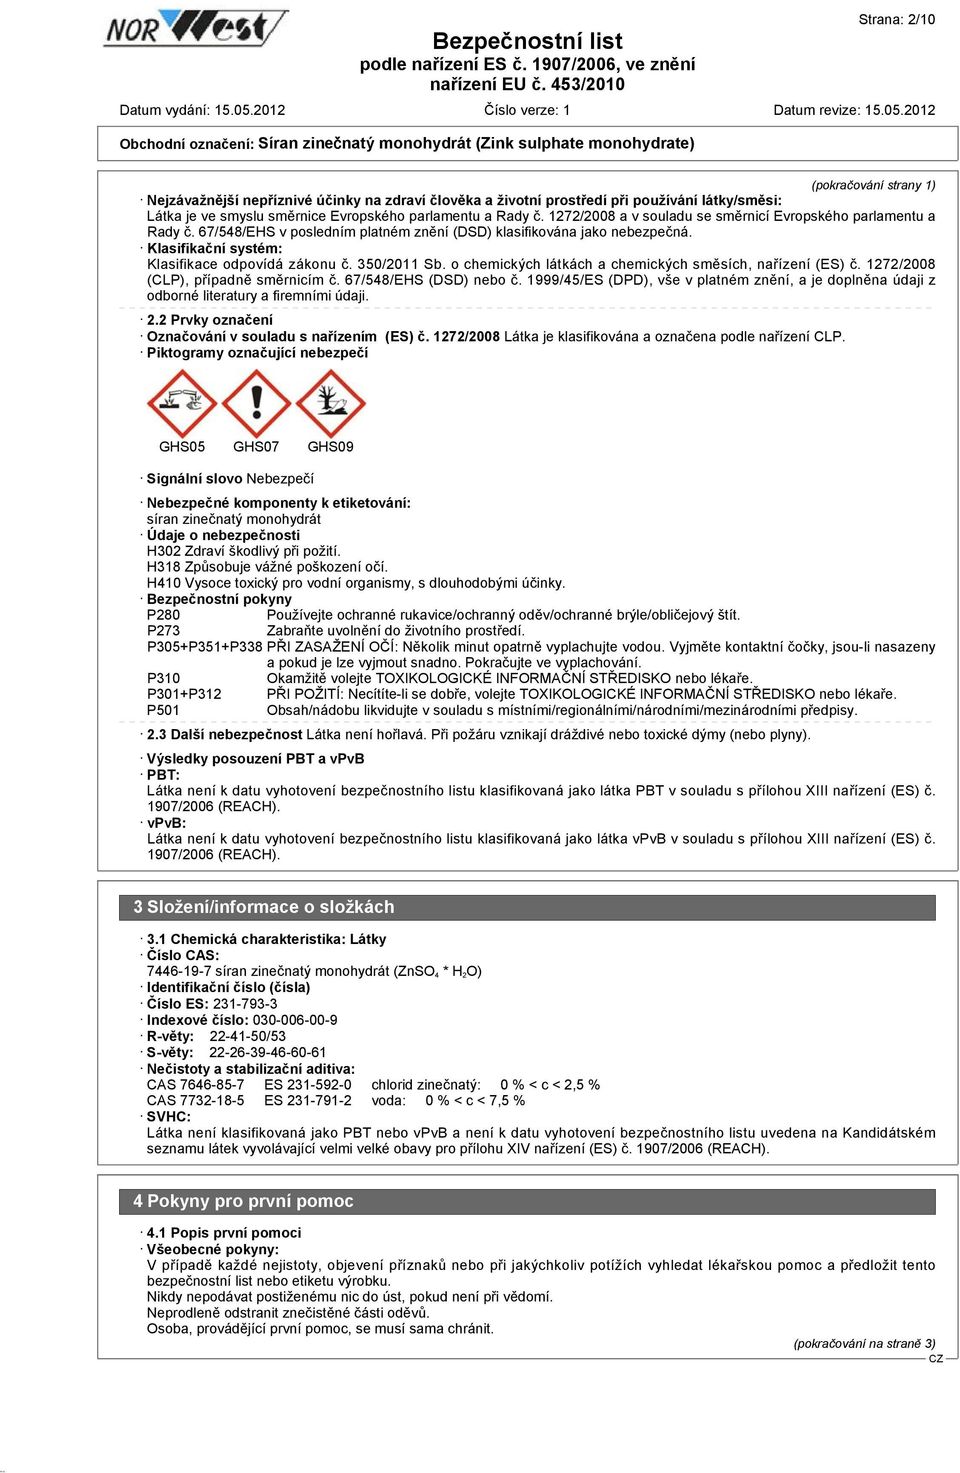 350/2011 Sb. o chemických látkách a chemických směsích, nařízení (ES) č. 1272/2008 (CLP), případně směrnicím č. 67/548/EHS (DSD) nebo č.